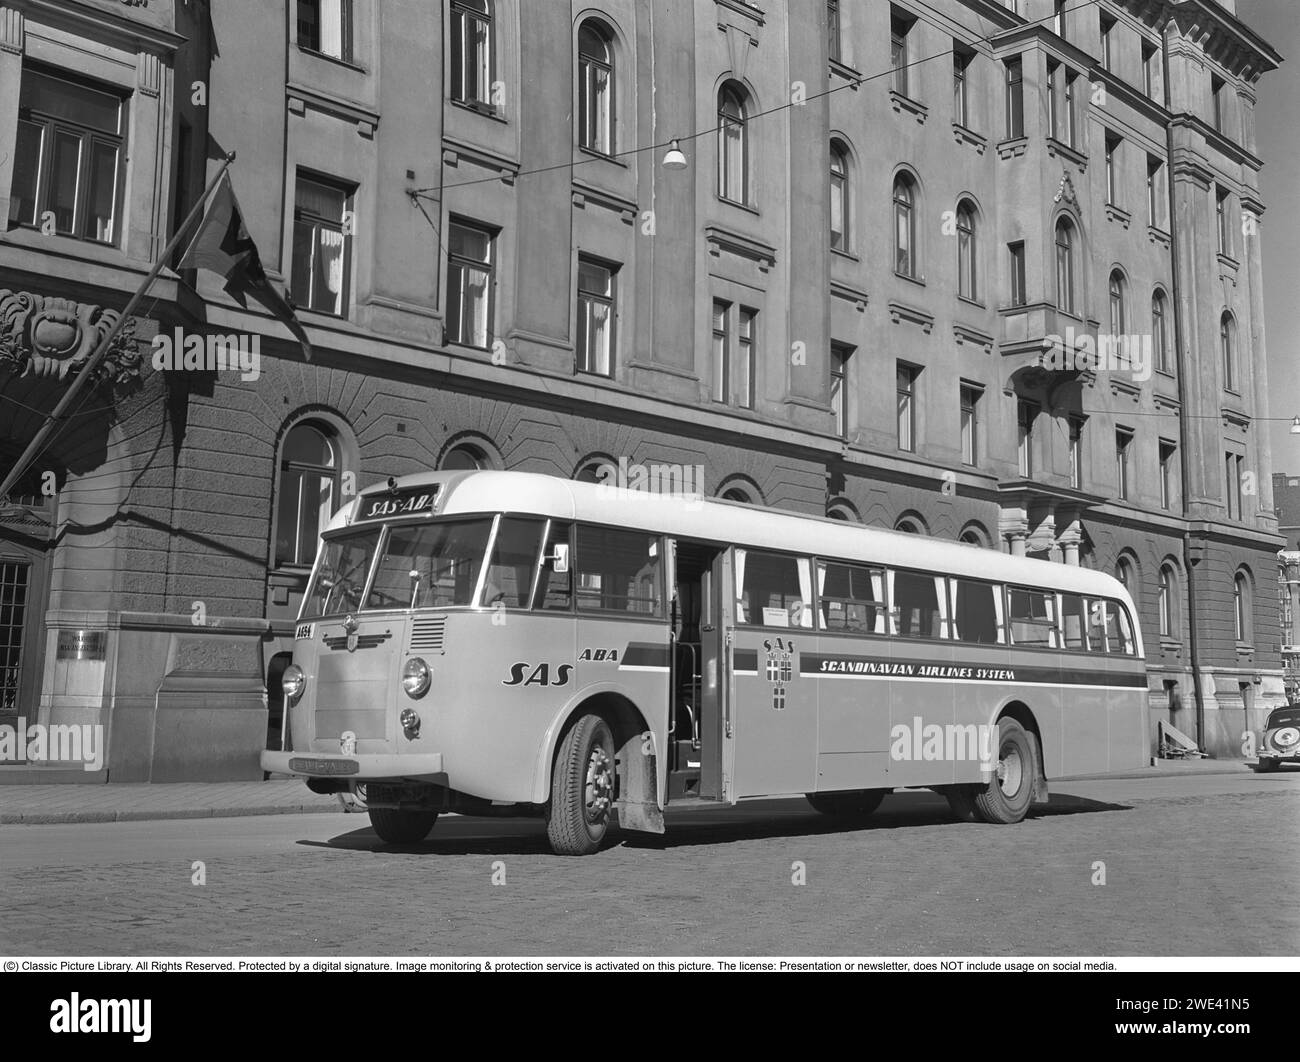 Die Firma Hägglund und Söhne in Örnsköldsvik. Zu dieser Zeit firmierte das Unternehmen unter dem Namen Tischlerei Fabrik, mit der Herstellung von Bussen, Straßenbahnen usw. Das Foto wurde in Nybrokajen in Stockholm aufgenommen, wobei einige der Boote der Firma Waxholm auf der rechten Seite sichtbar waren. Das dramatische Theatergebäude ist auf der linken Seite zu sehen. Ein Scania Vabi-Bus, in dem Hägglund und Söhne 1949 die Karosserie und das Innere bauten. Der Bus mit der Registrierungsnummer A654 ist mit dem Emblem und dem Logo der Airline SAS gekennzeichnet. Kristoffersson Ref. 238A-27 Stockfoto